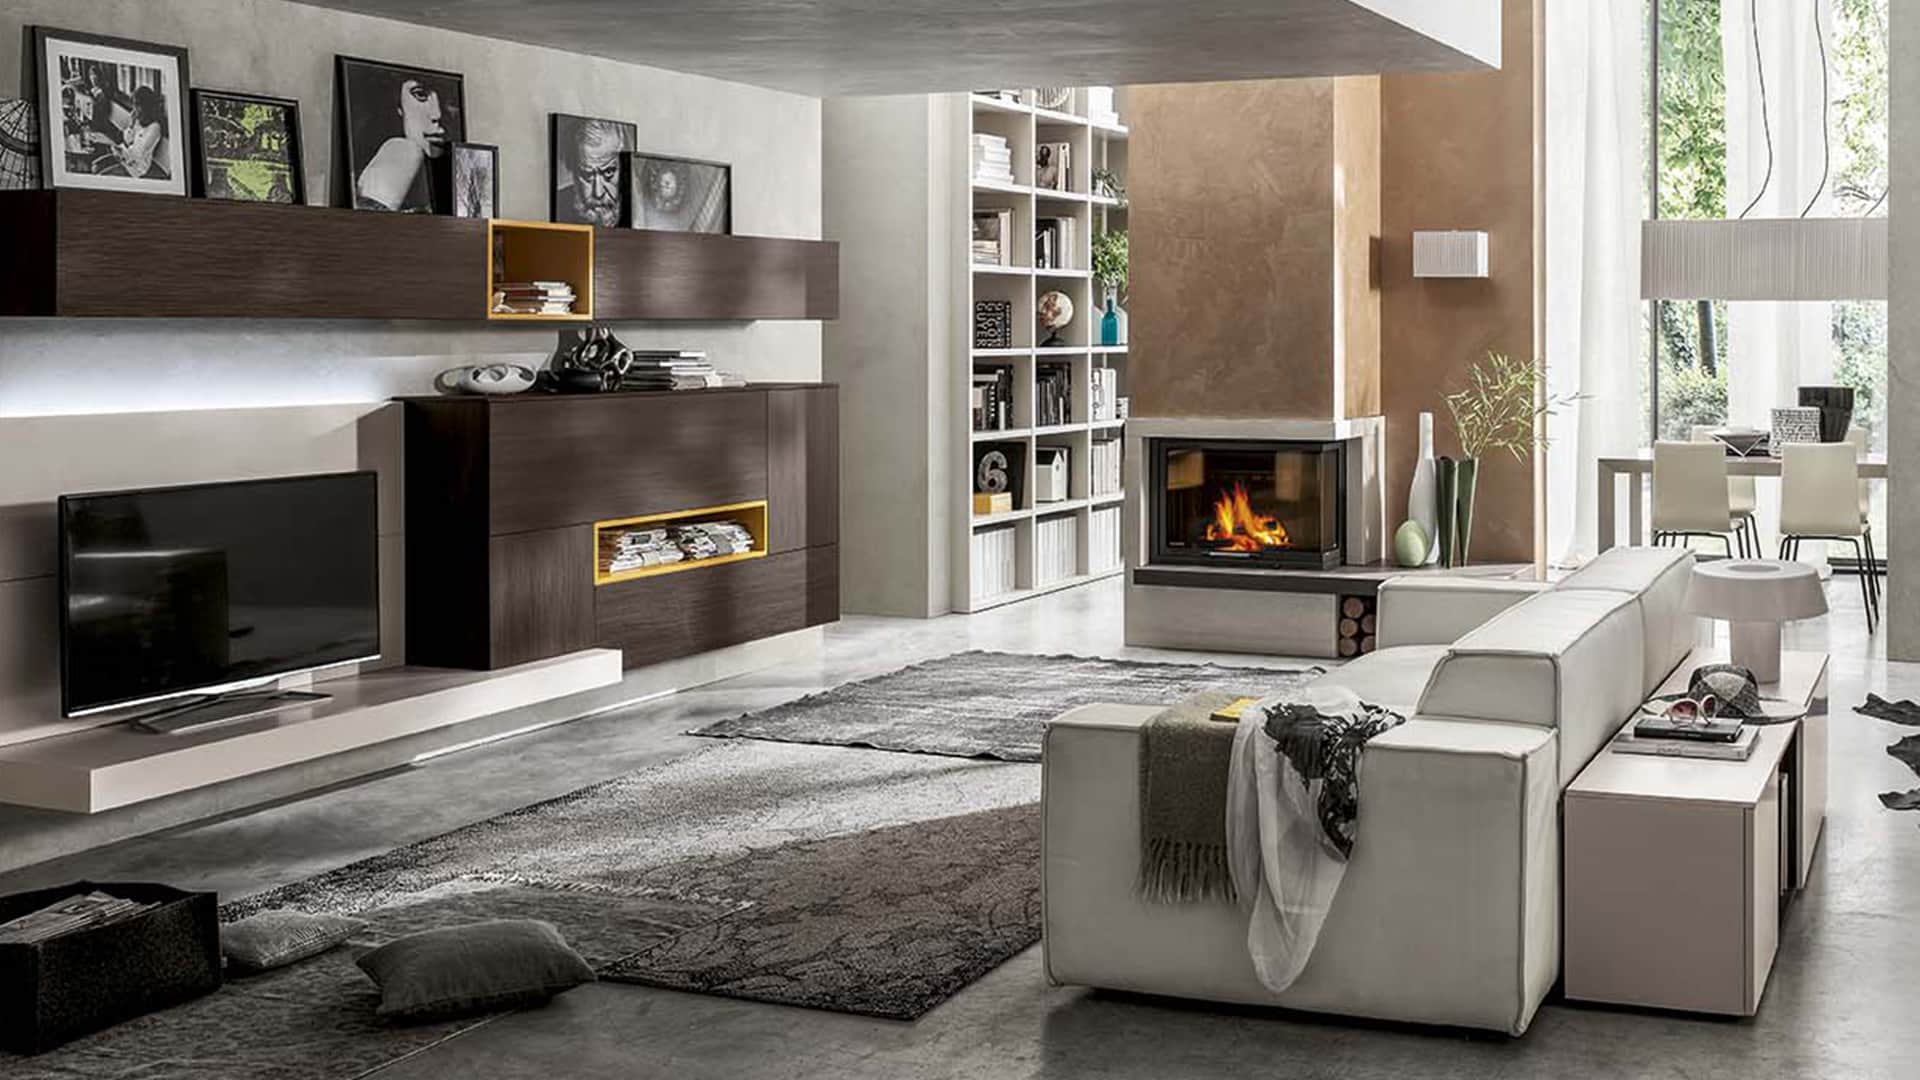 Vendita di mobili per soggiorno a padova mobili da for Soggiorno arredamento moderno